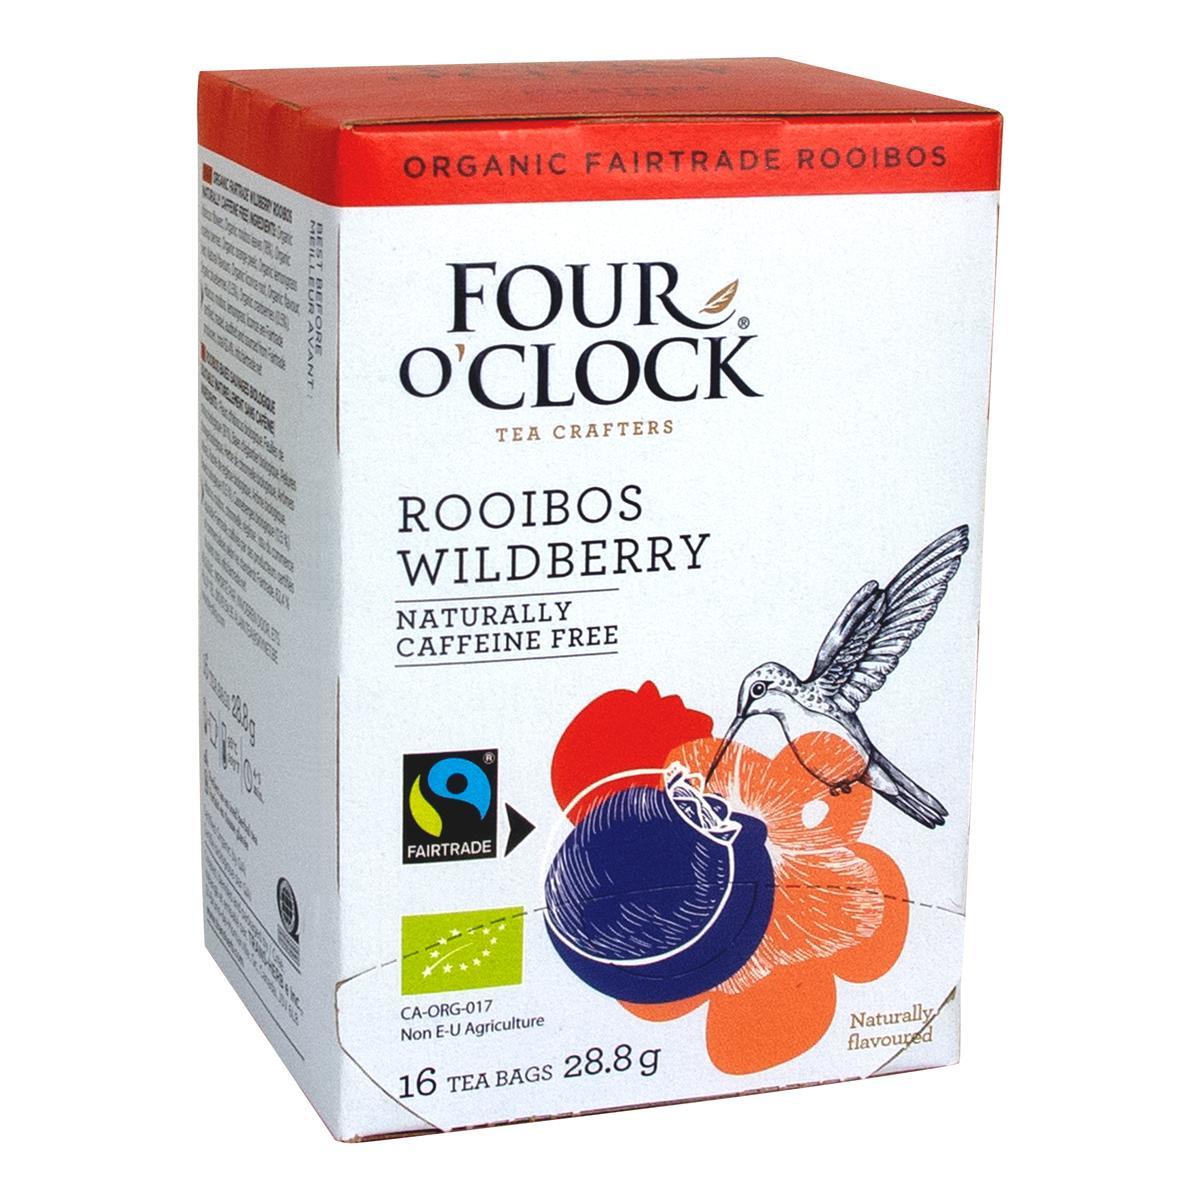 Four O’Clock's Four O'Clock ROOIBOS WILDBERRY'